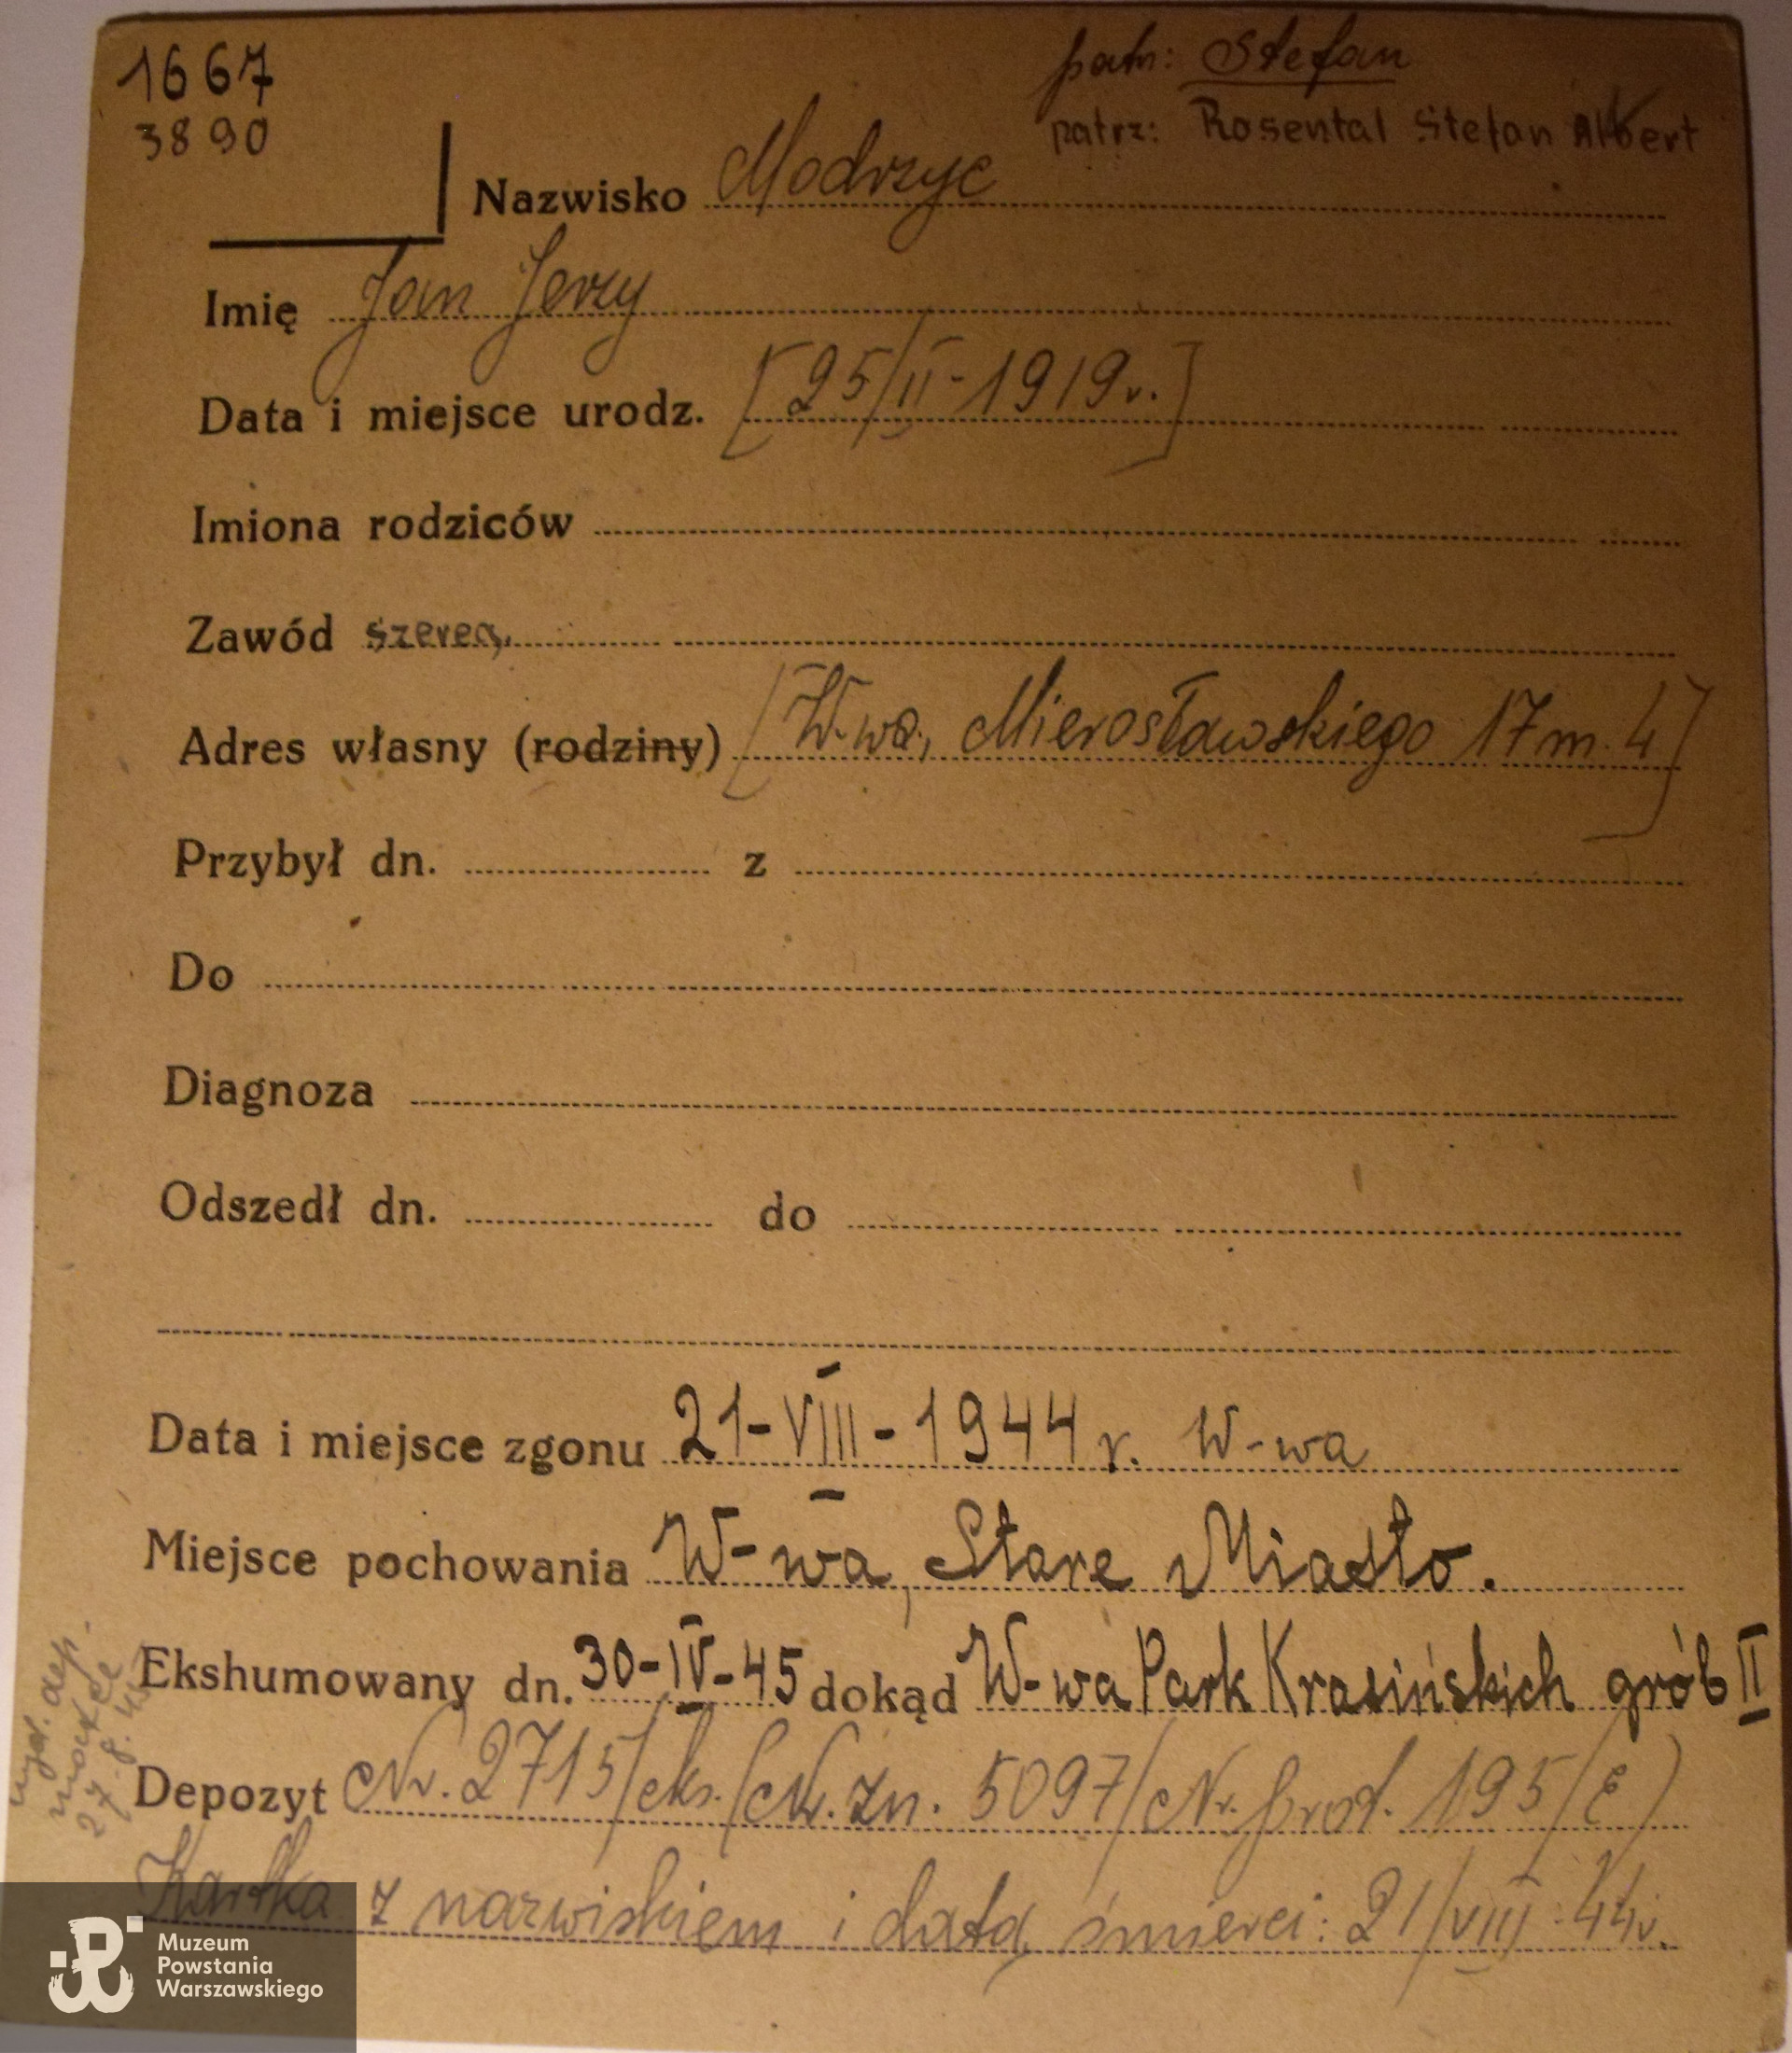 PCK - kartoteka, tu data ur. 25.02.1919 i nazwisko konspiracyjne Jan Jerzy Modrzyc